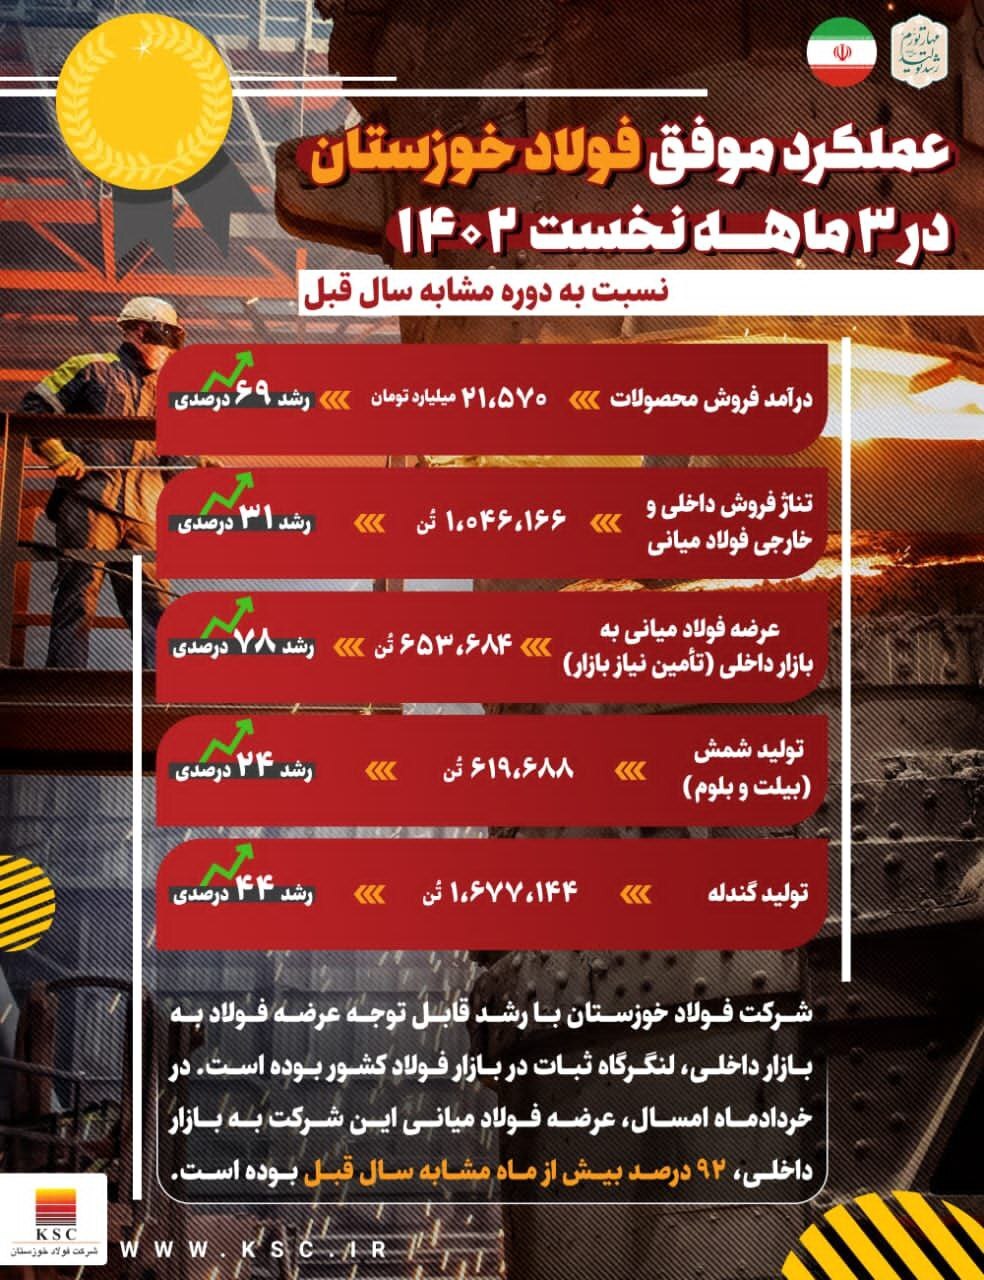 عملکرد موفق فولاد خوزستان در ۳ ماهه نخست سال جاری/ از رشد ۲۴ درصدی تولید شمش تا رشد ۶۹ درصدی درآمد فروش